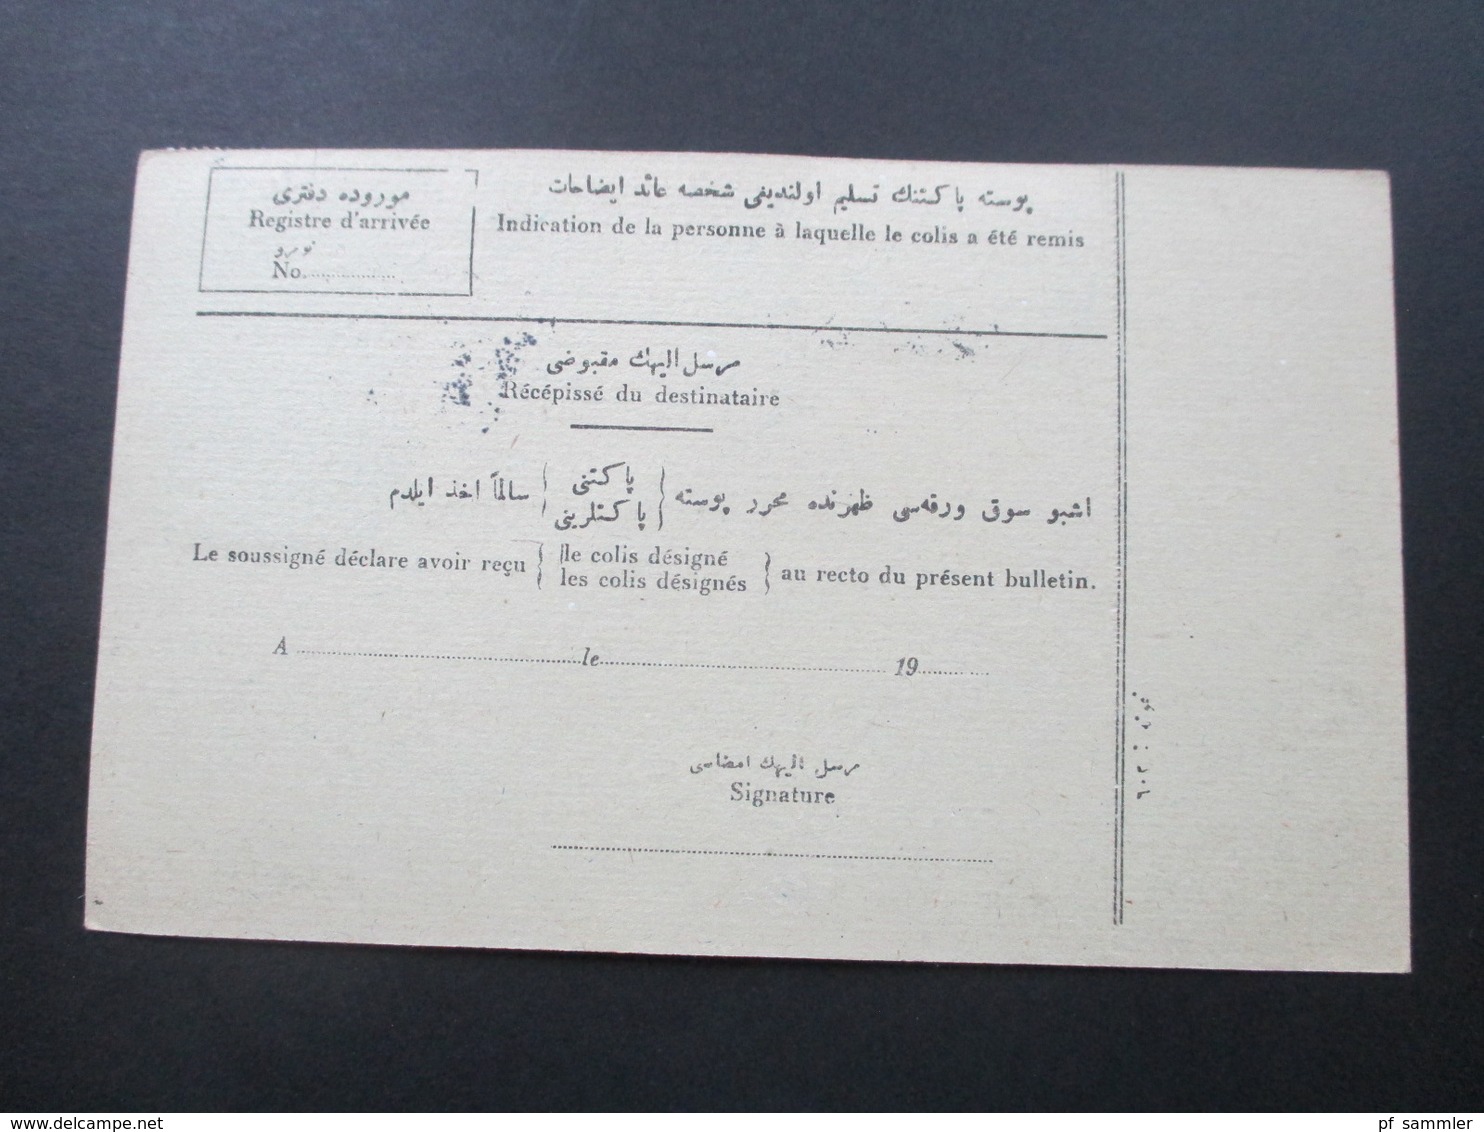 Türkei 1919 Paketkarte Schöne Frankatur! Noyaux D'abricots Schenker & Cie In Wien. Transit. Albert Jossue Constantinople - Covers & Documents